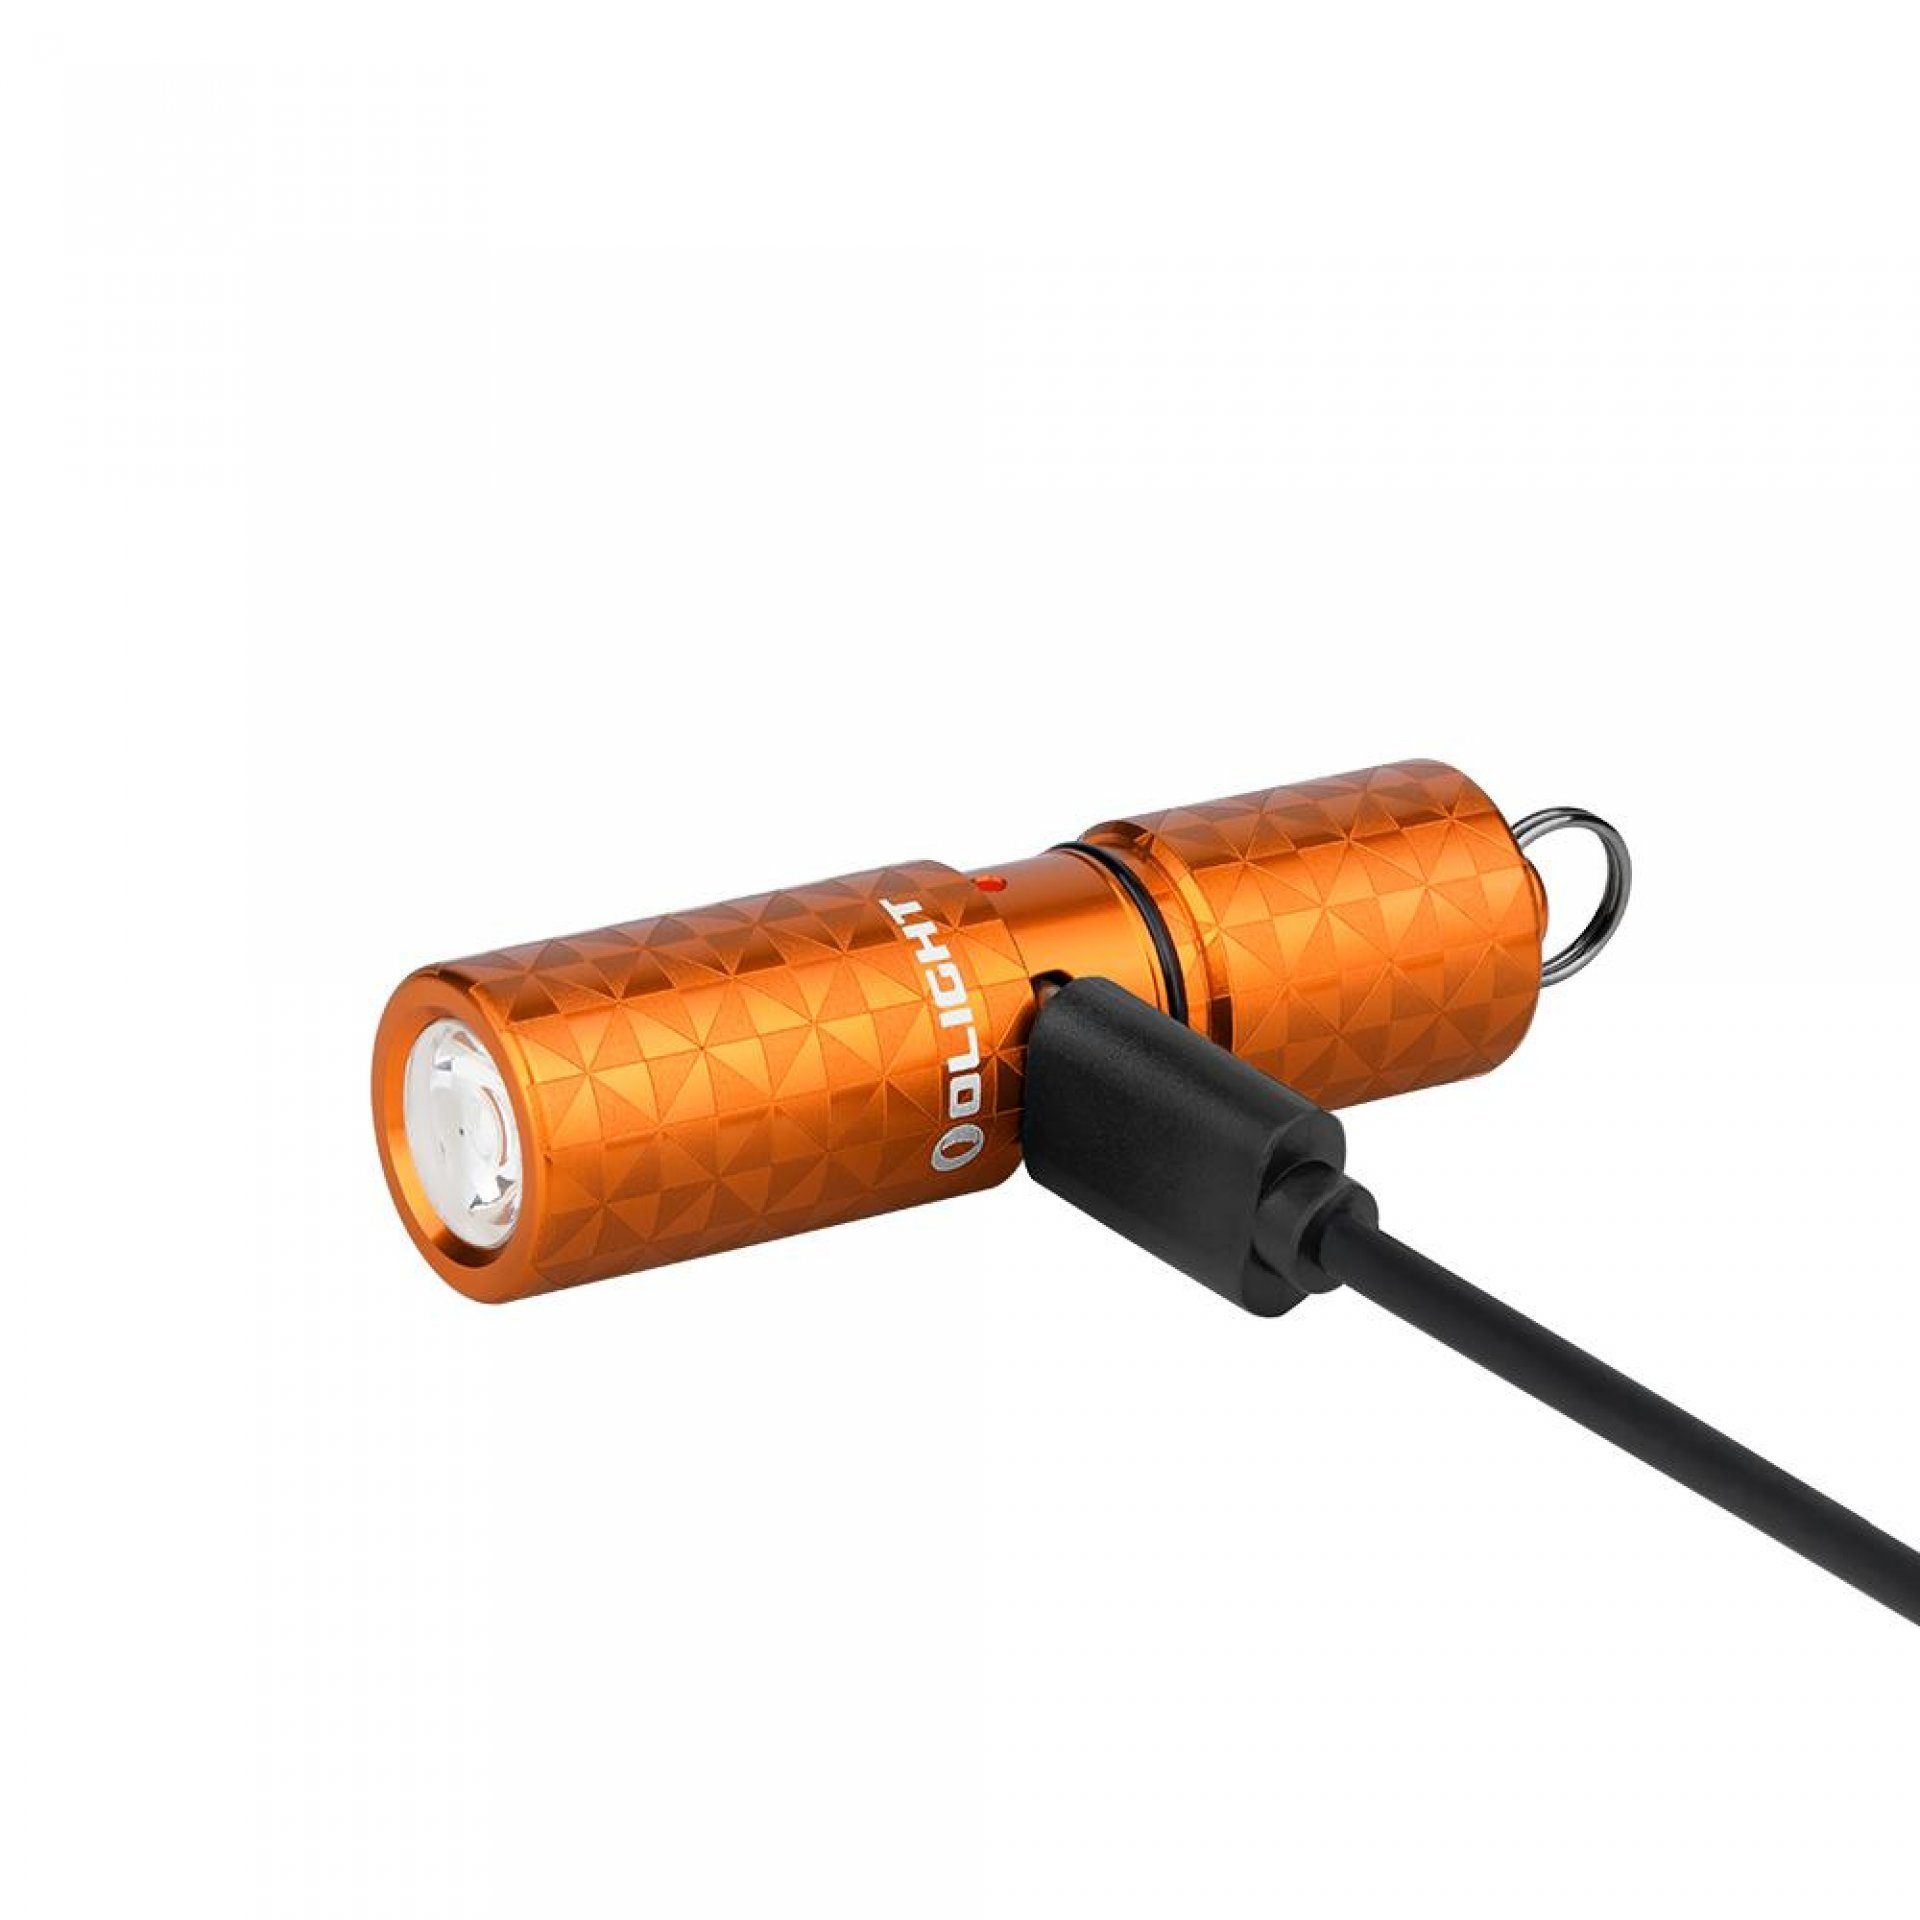 Taschenlampe LED Schlüsselbund Mini Pinwheel I1R2 Taschenlampe Orange Pro OLIGHT